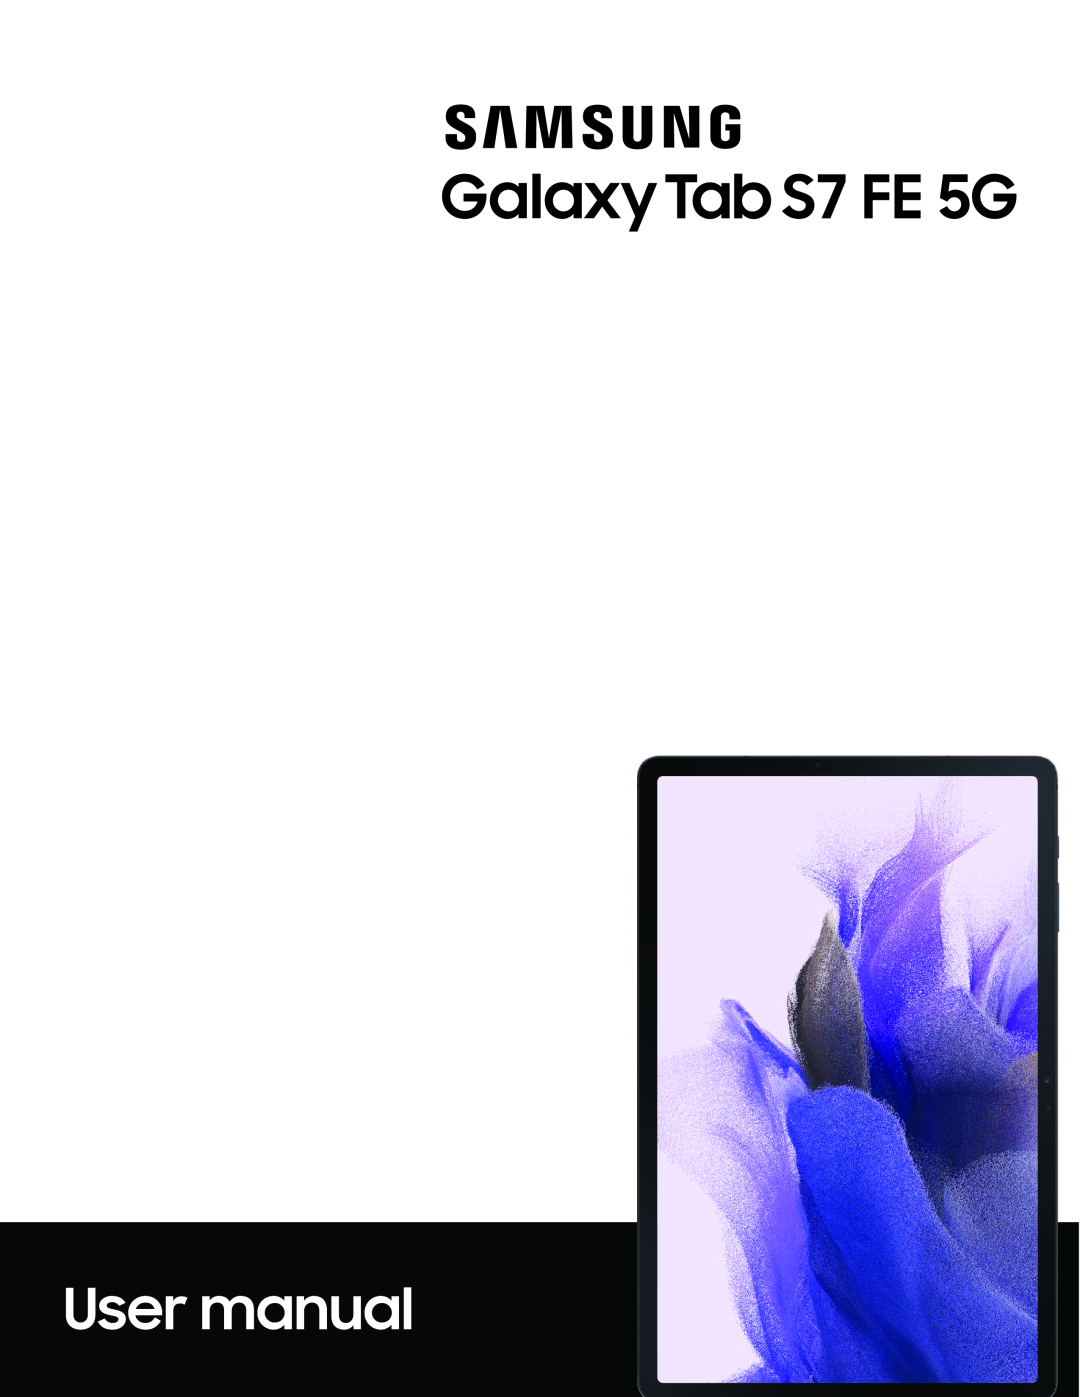 Galaxy Tab S7 FE US Cellular